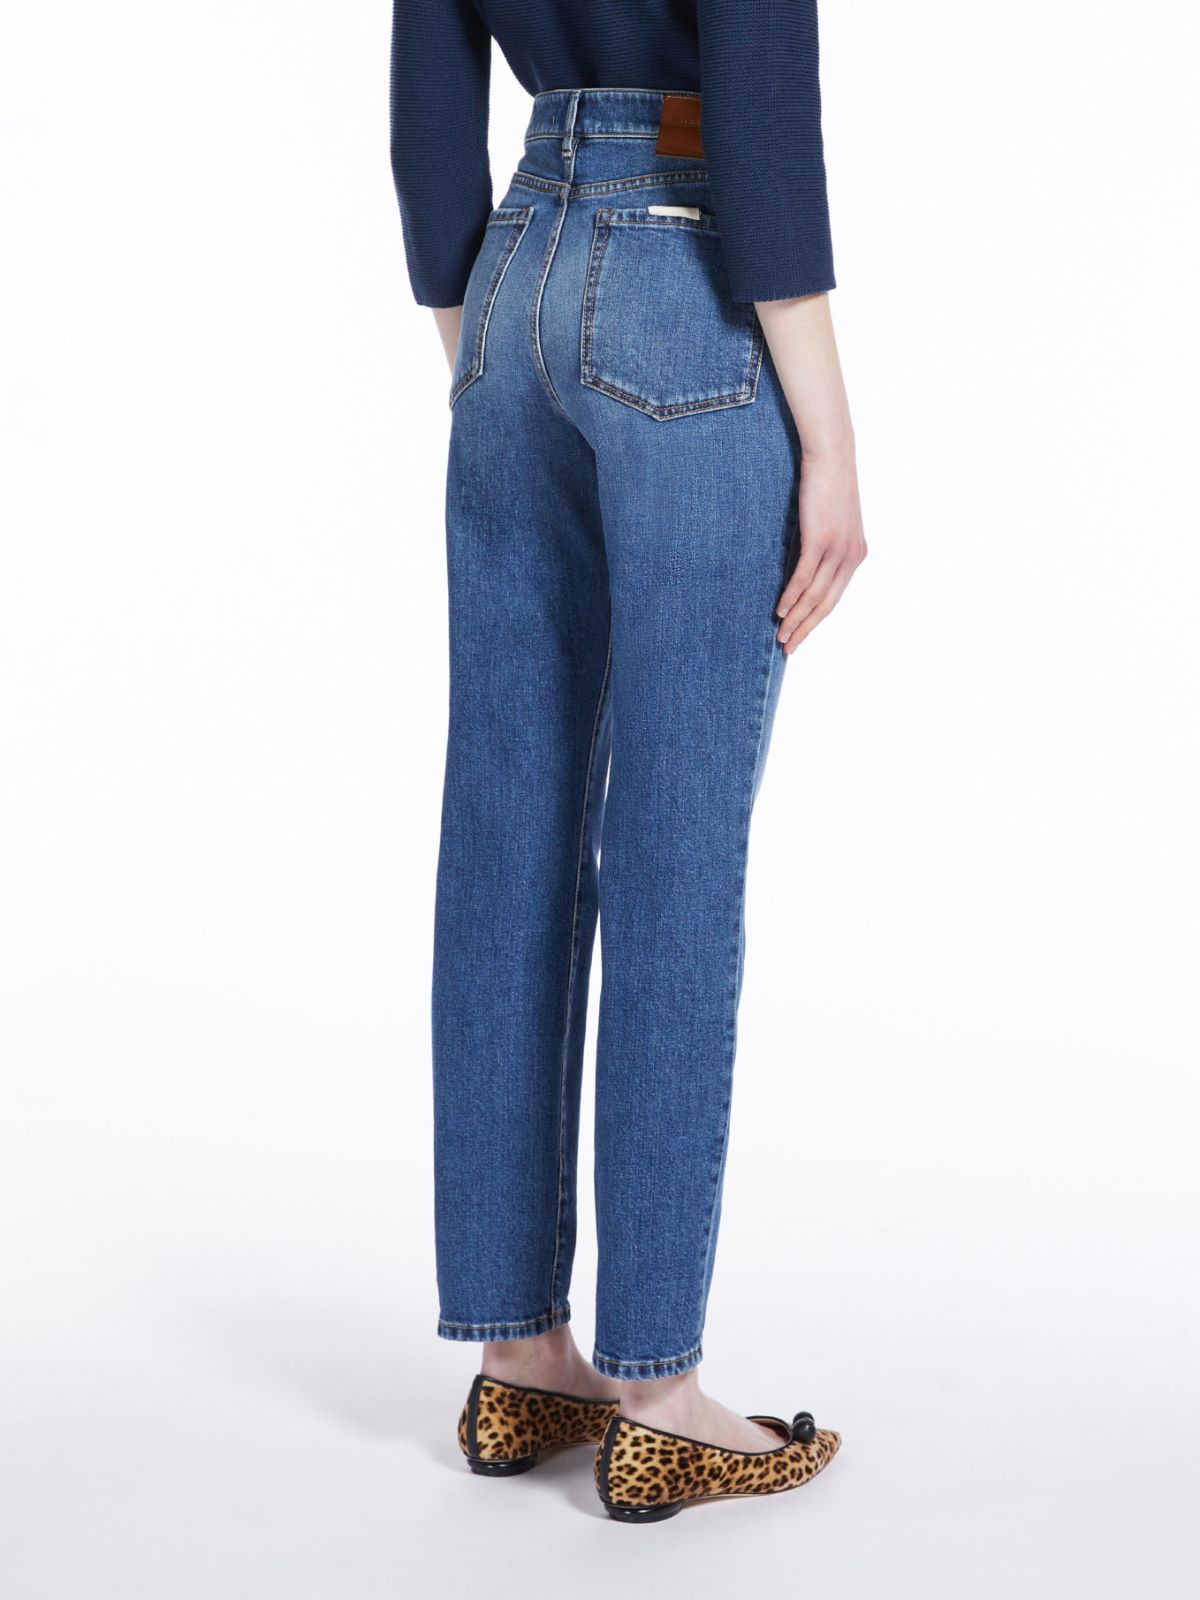 Cotton denim jeans - NAVY - Weekend Max Mara - 3